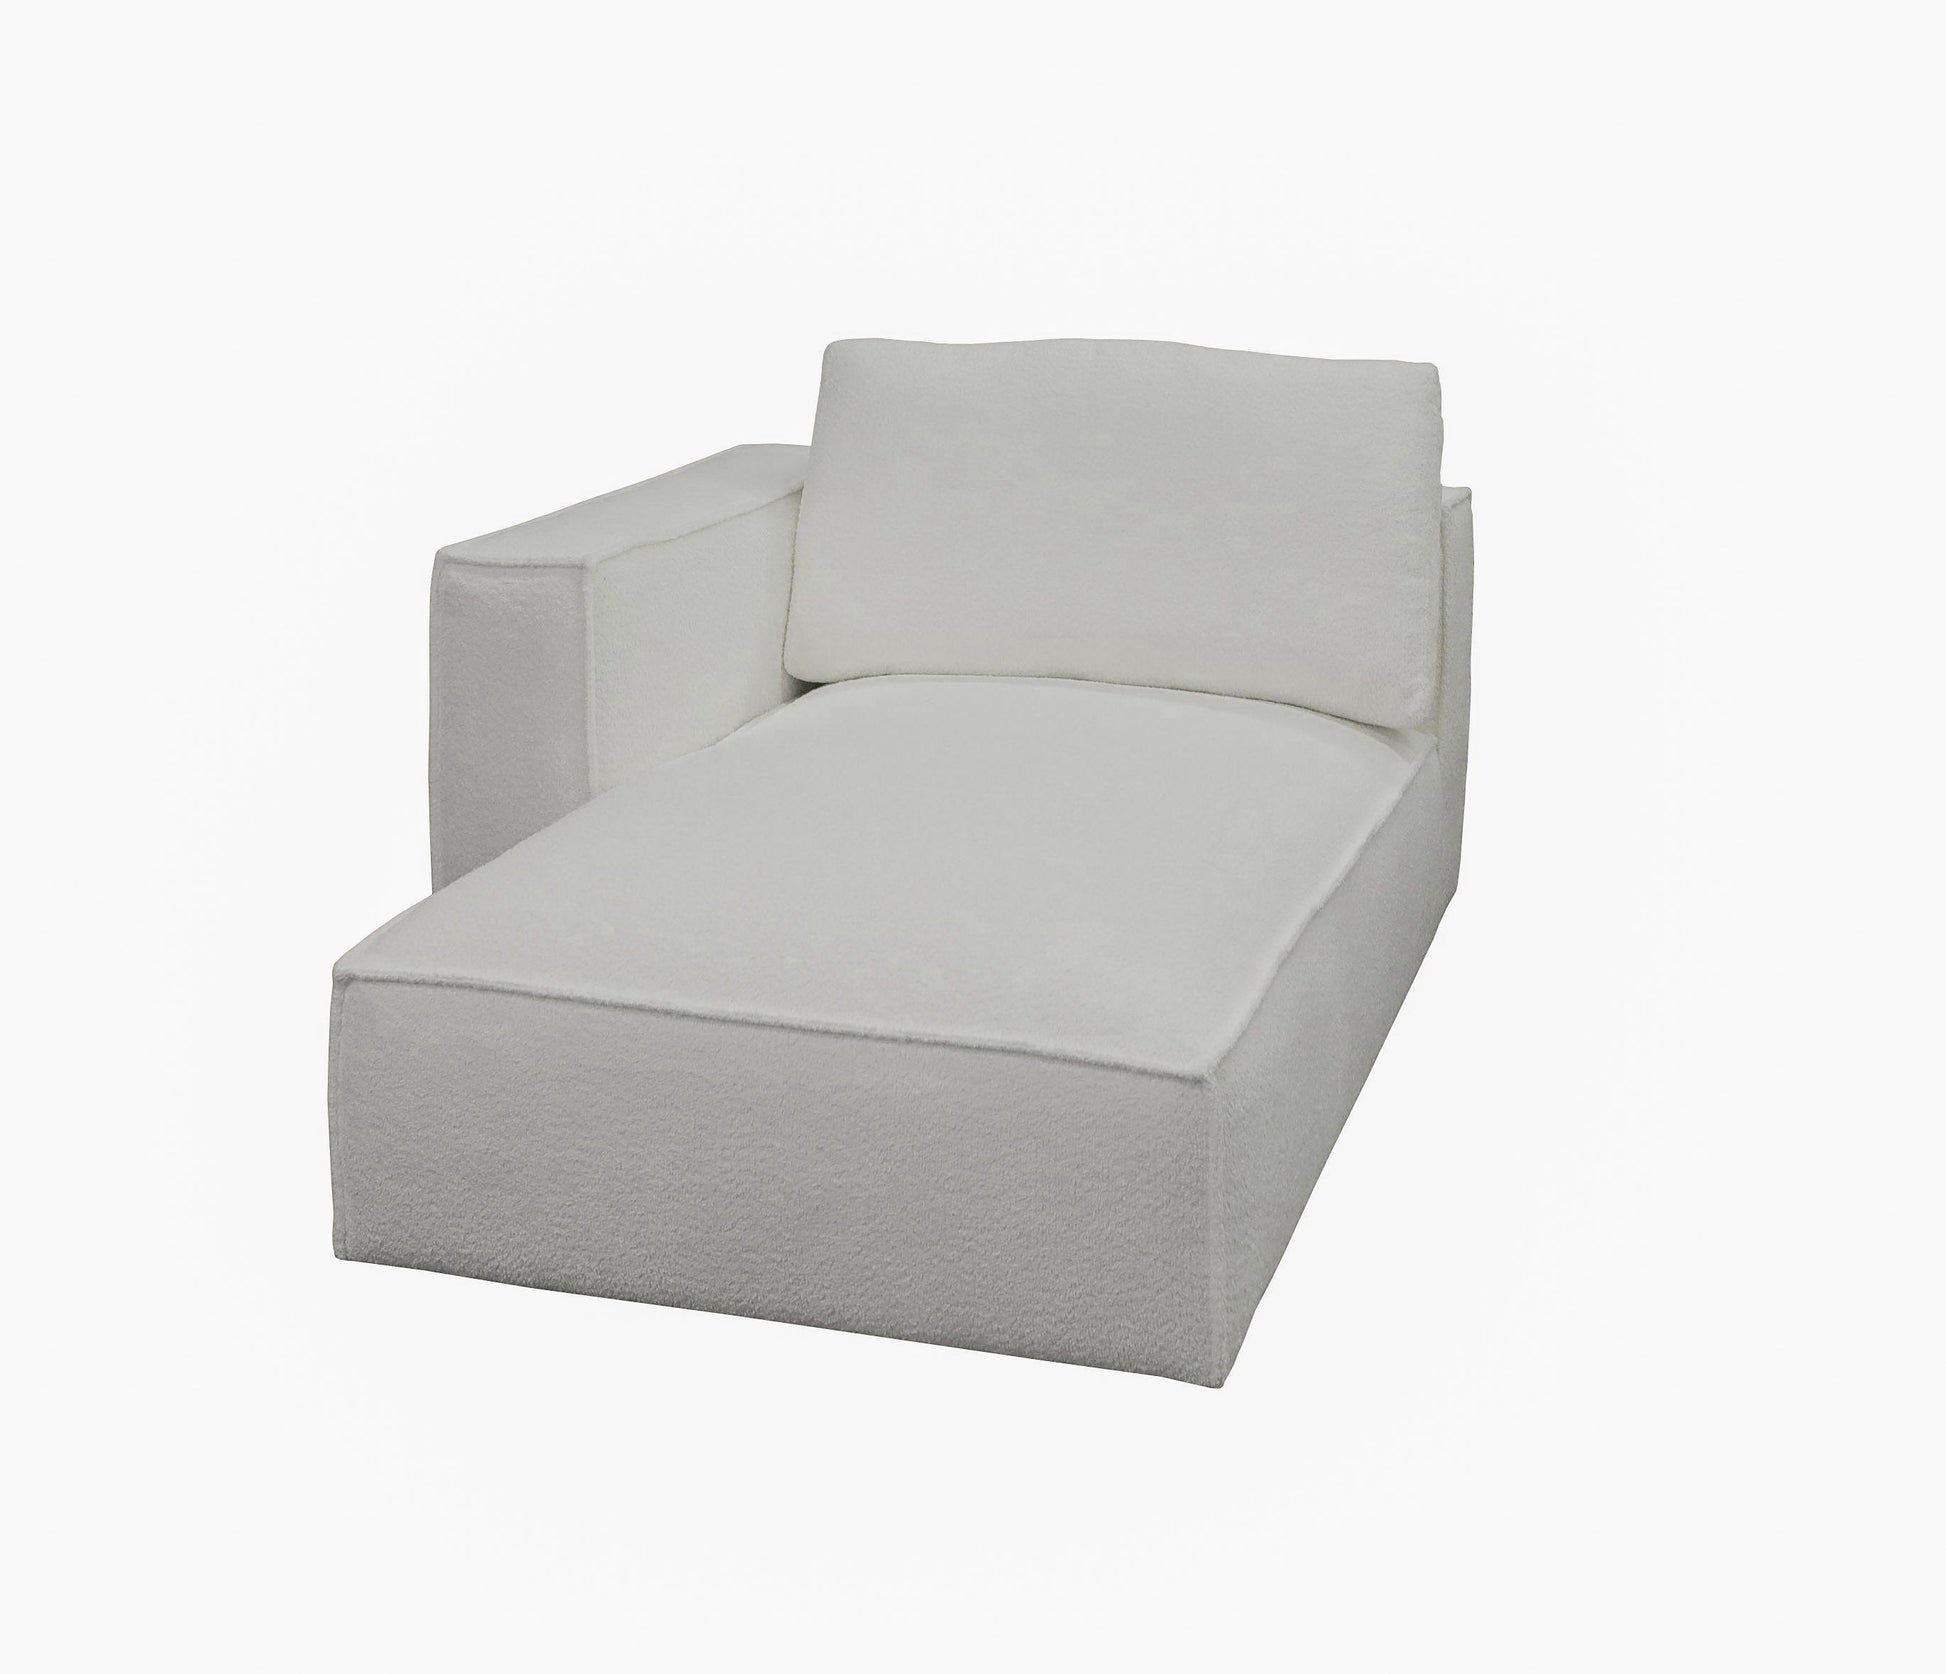 Divani Casa Lulu Modern White Fabric Modular Sectional Sofa 4